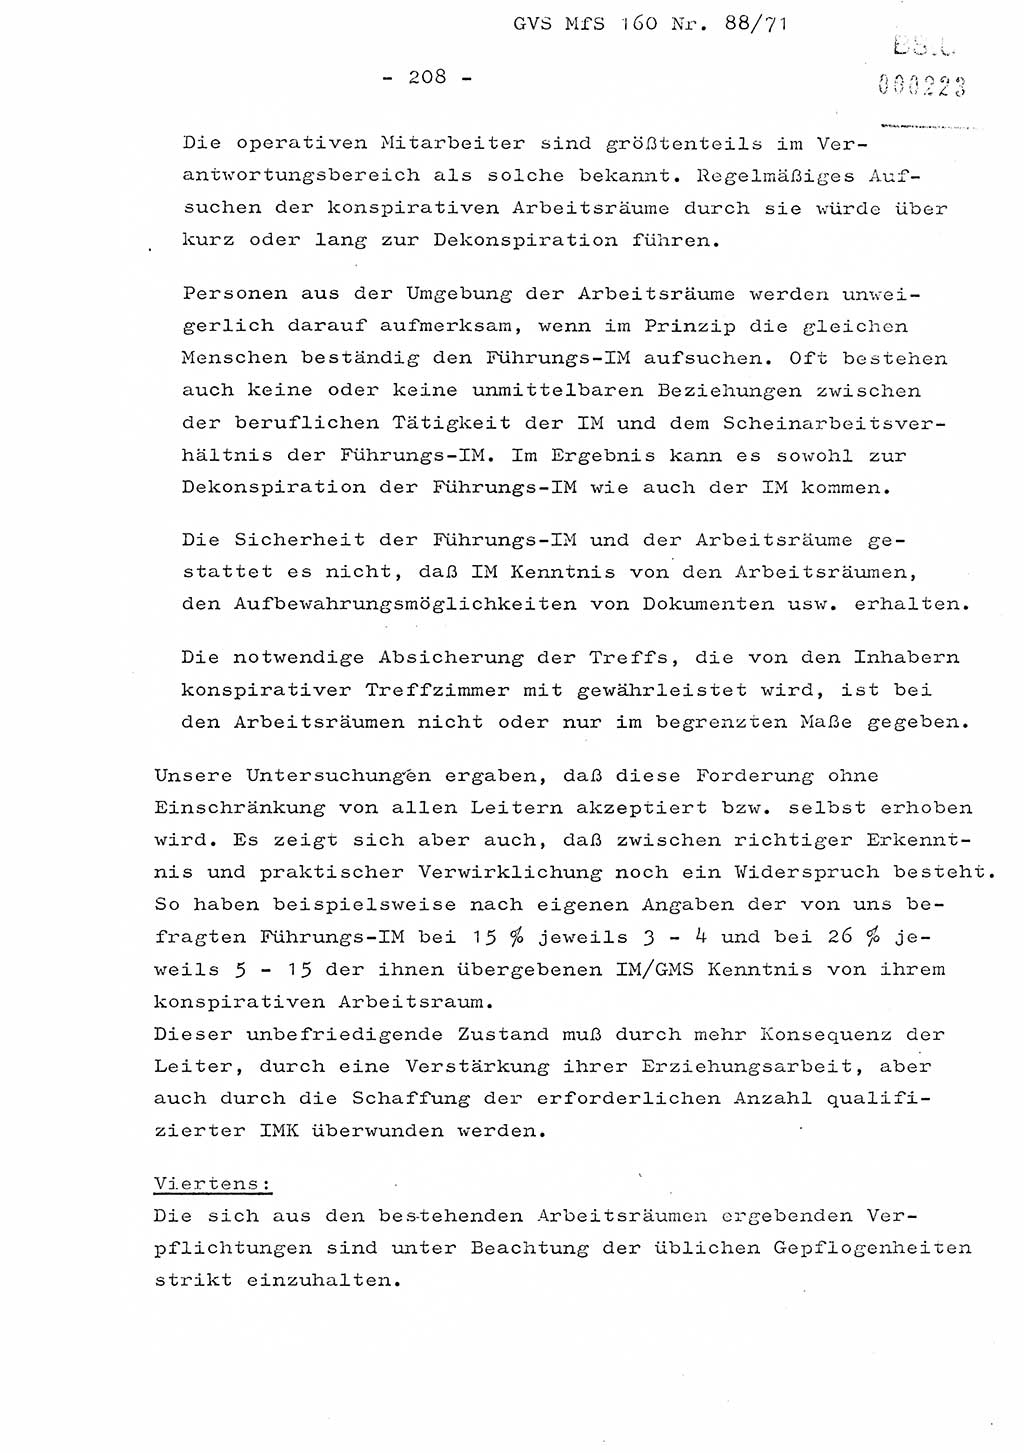 Dissertation Oberstleutnant Josef Schwarz (BV Schwerin), Major Fritz Amm (JHS), Hauptmann Peter Gräßler (JHS), Ministerium für Staatssicherheit (MfS) [Deutsche Demokratische Republik (DDR)], Juristische Hochschule (JHS), Geheime Verschlußsache (GVS) 160-88/71, Potsdam 1972, Seite 208 (Diss. MfS DDR JHS GVS 160-88/71 1972, S. 208)